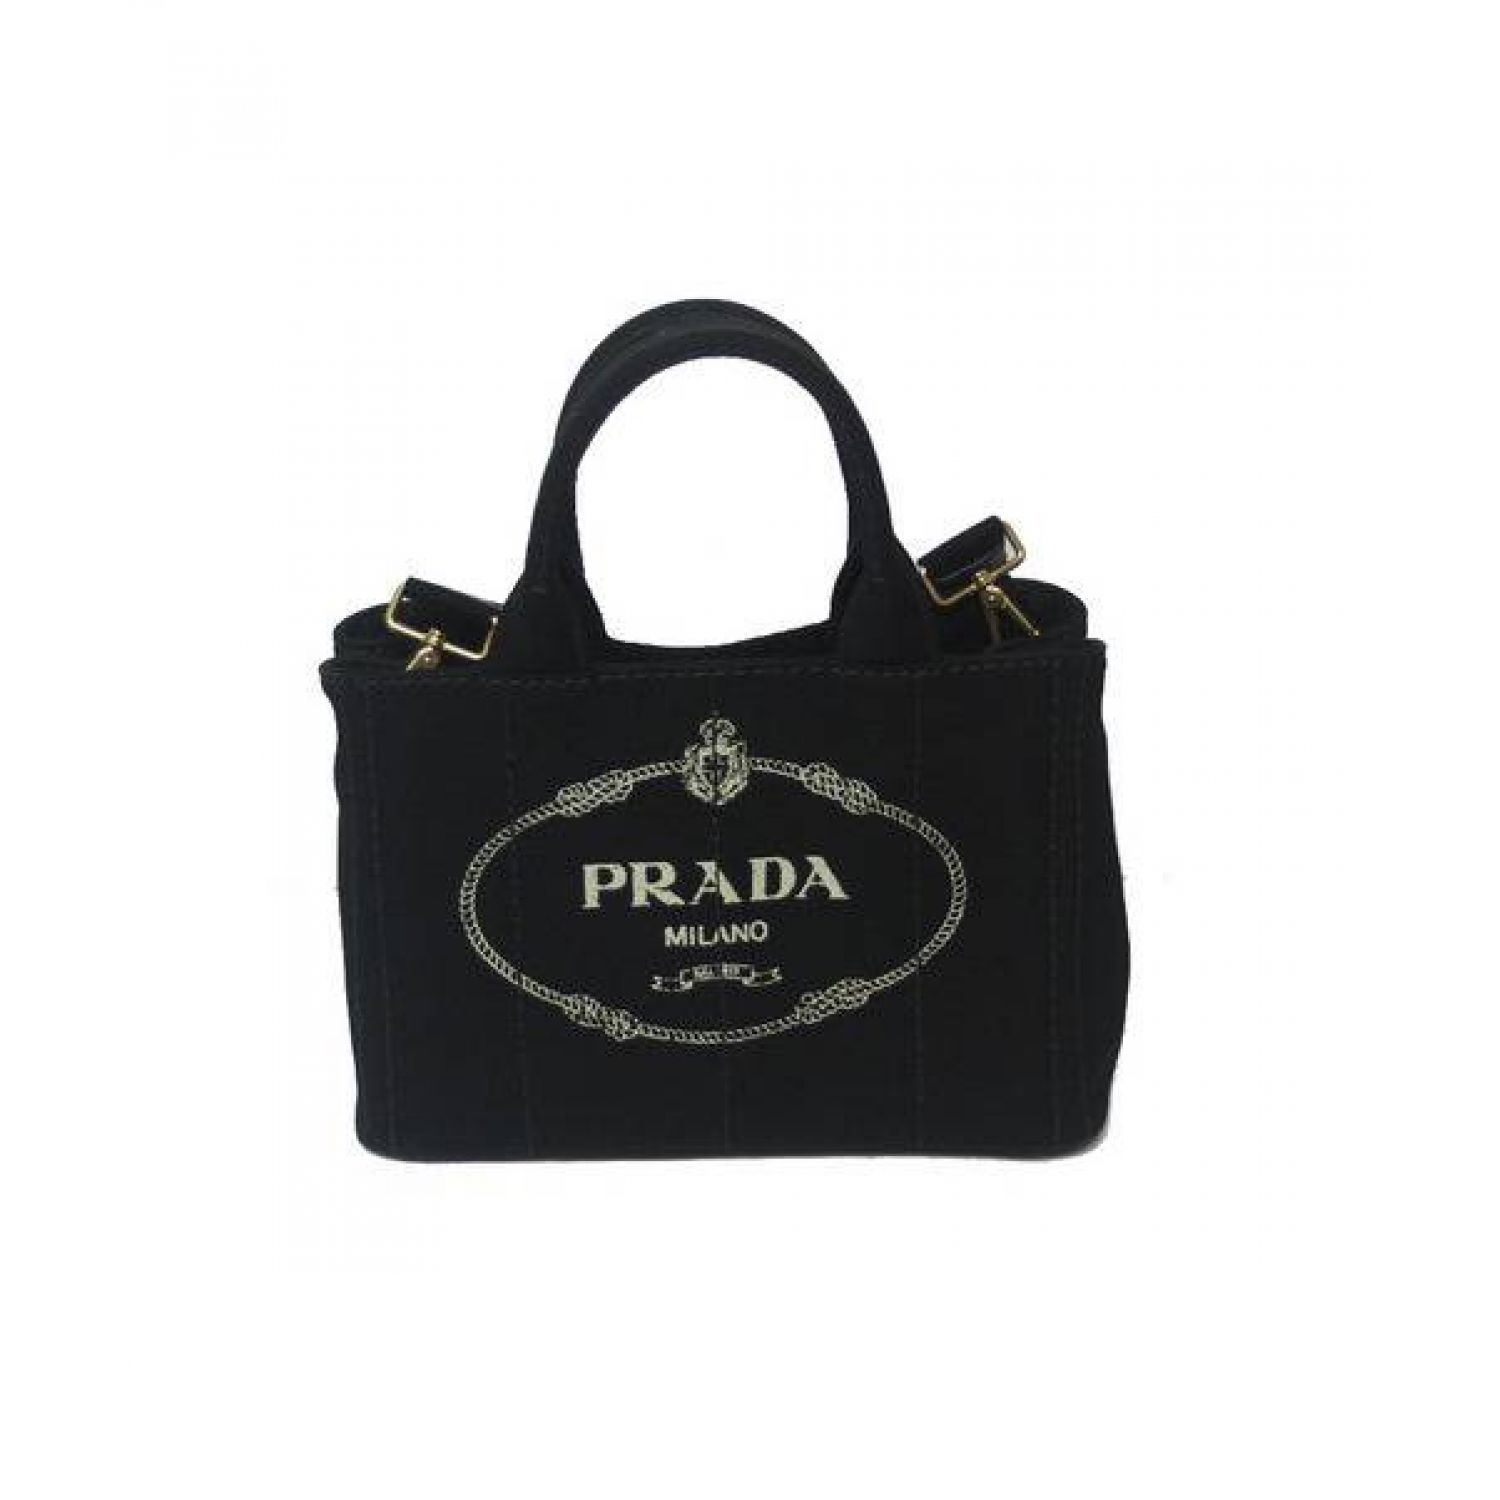 PRADA (プラダ) キャンバストートバッグ ブラック カナパ CANAPA